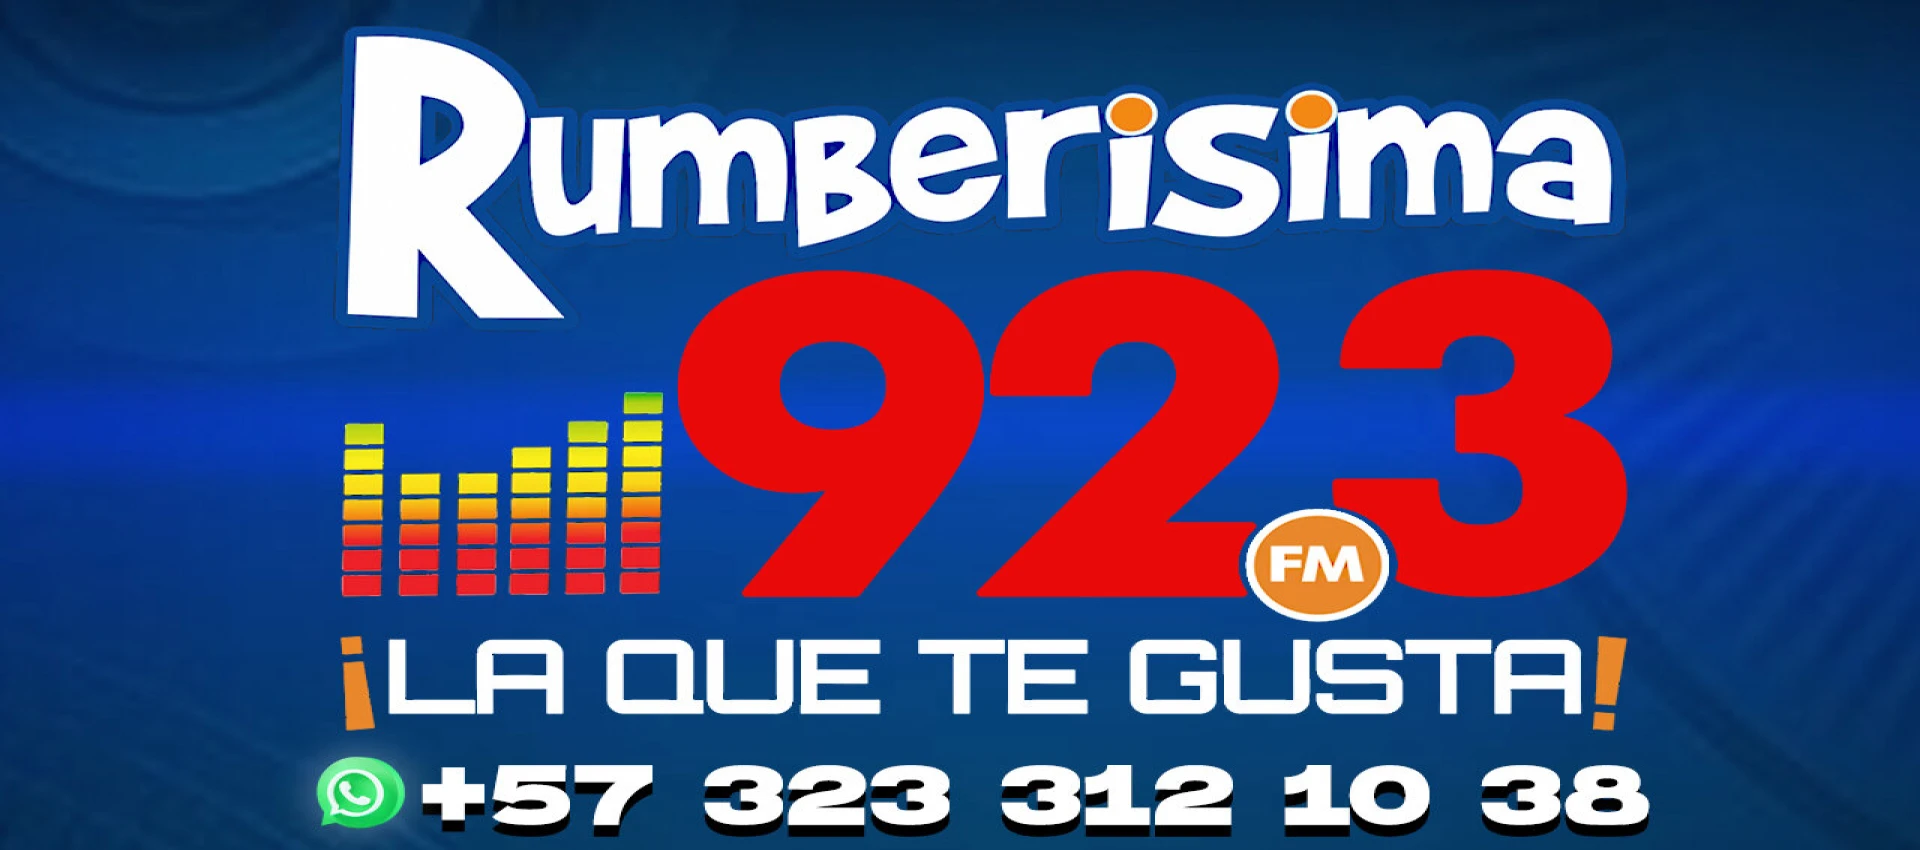 Rumberisima 92.3 FM.